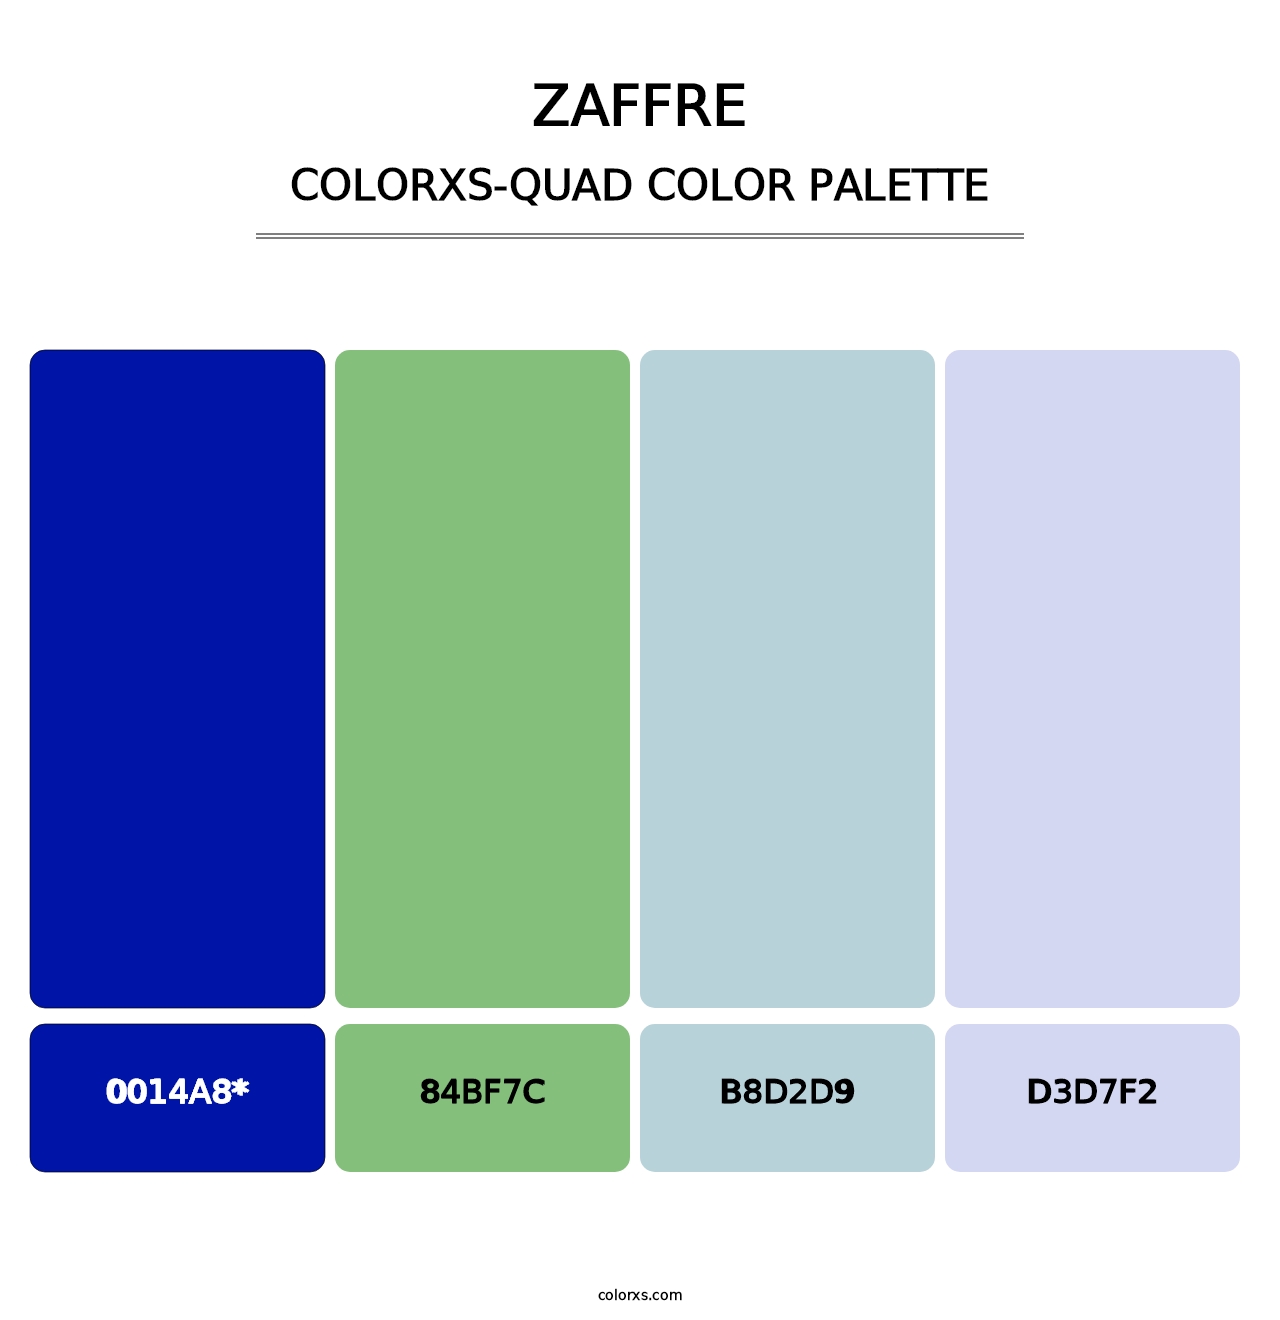 Zaffre - Colorxs Quad Palette